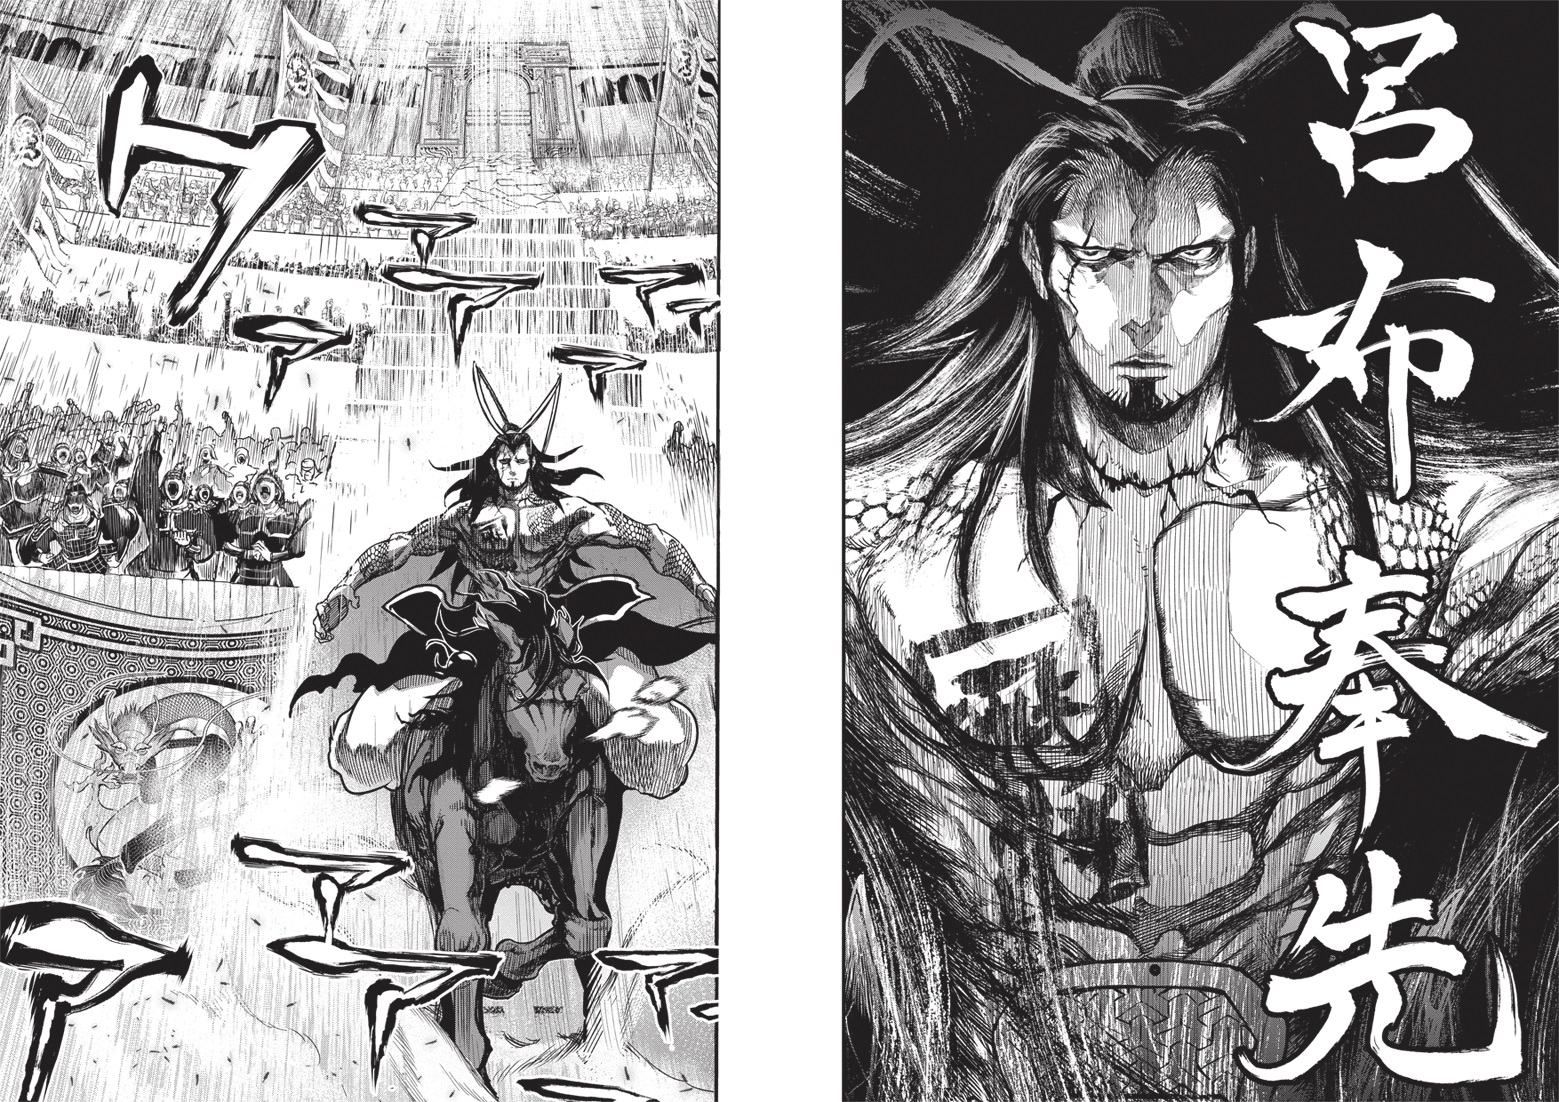 Avis Manga Ki-oon : Valkyrie Apocalypse - Tome 1 blog manga lageekroom